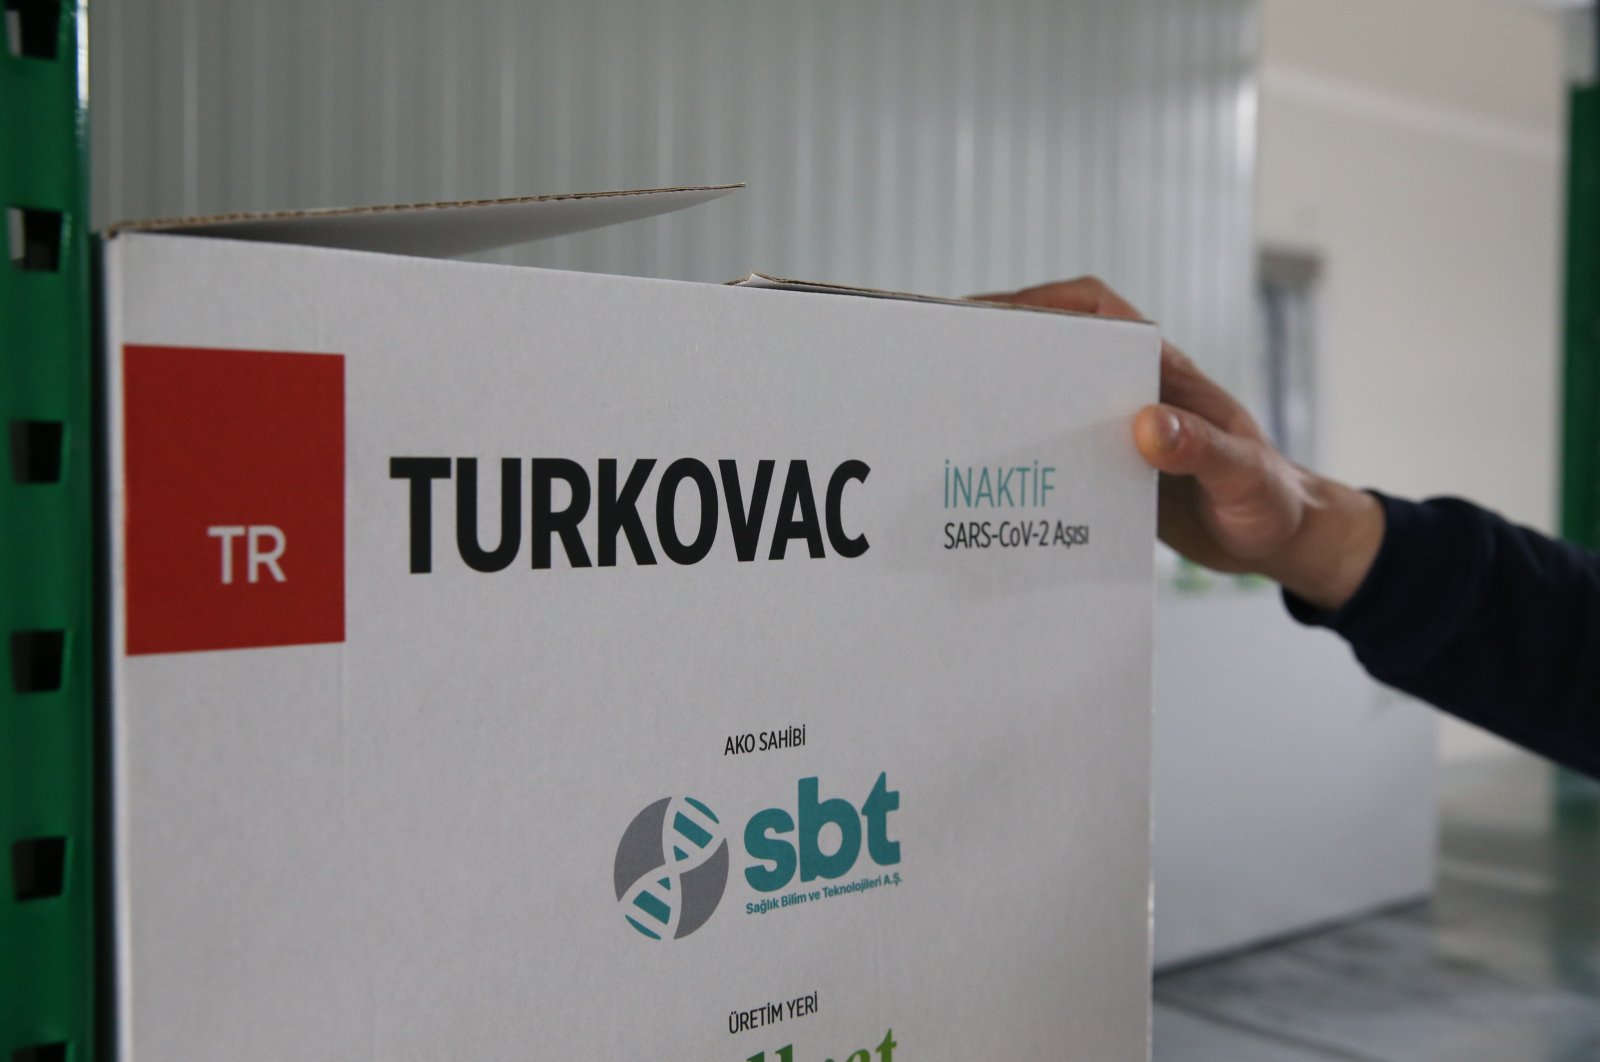 Turkovac dapat meningkatkan jumlah yang divaksinasi